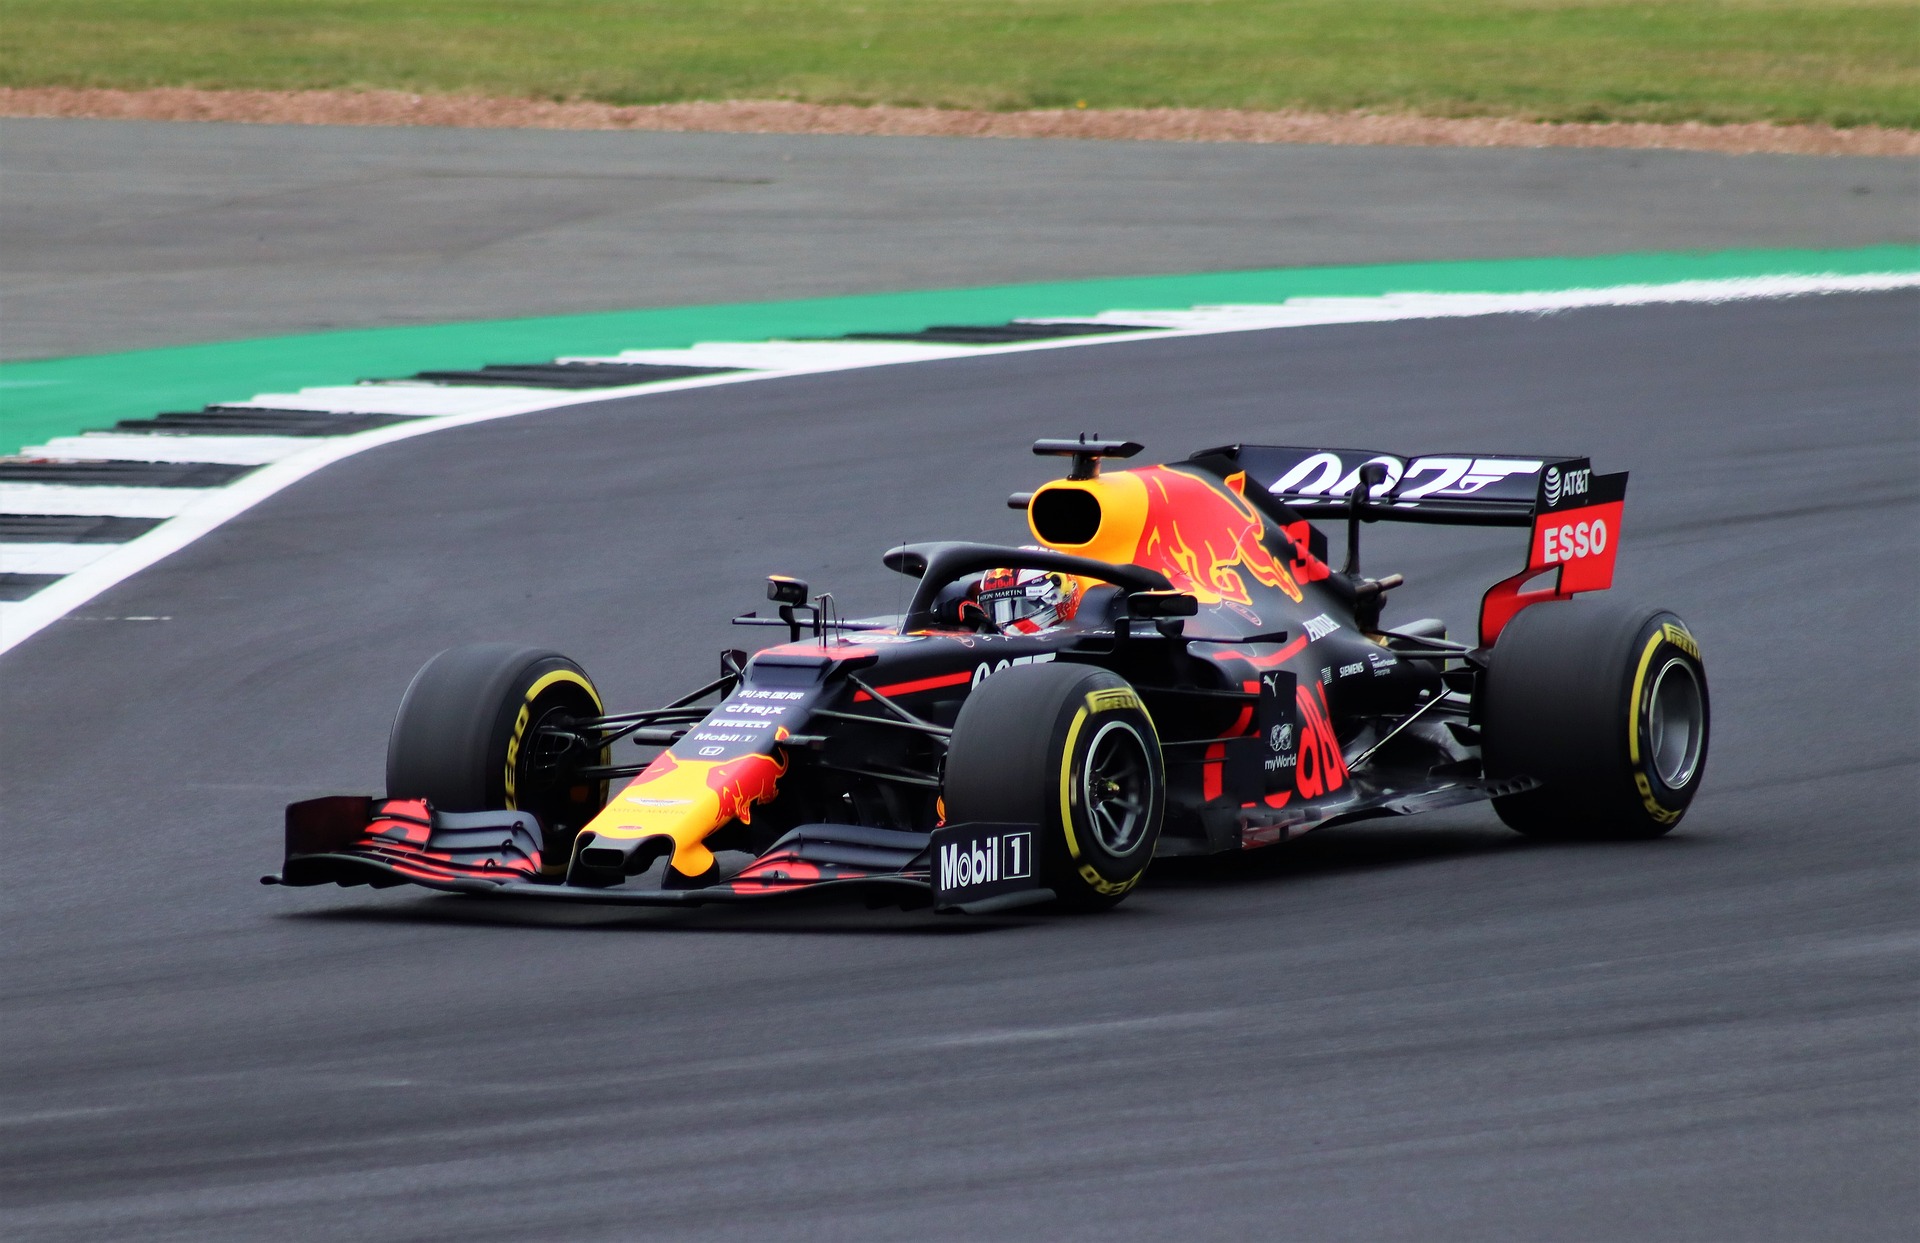 Red Bull Racing zdobył mistrzostwo świata konstruktorów w Formule 1 - wygrana numer trzynaście Maxa Verstappena we wciąż trwającym sezonie!